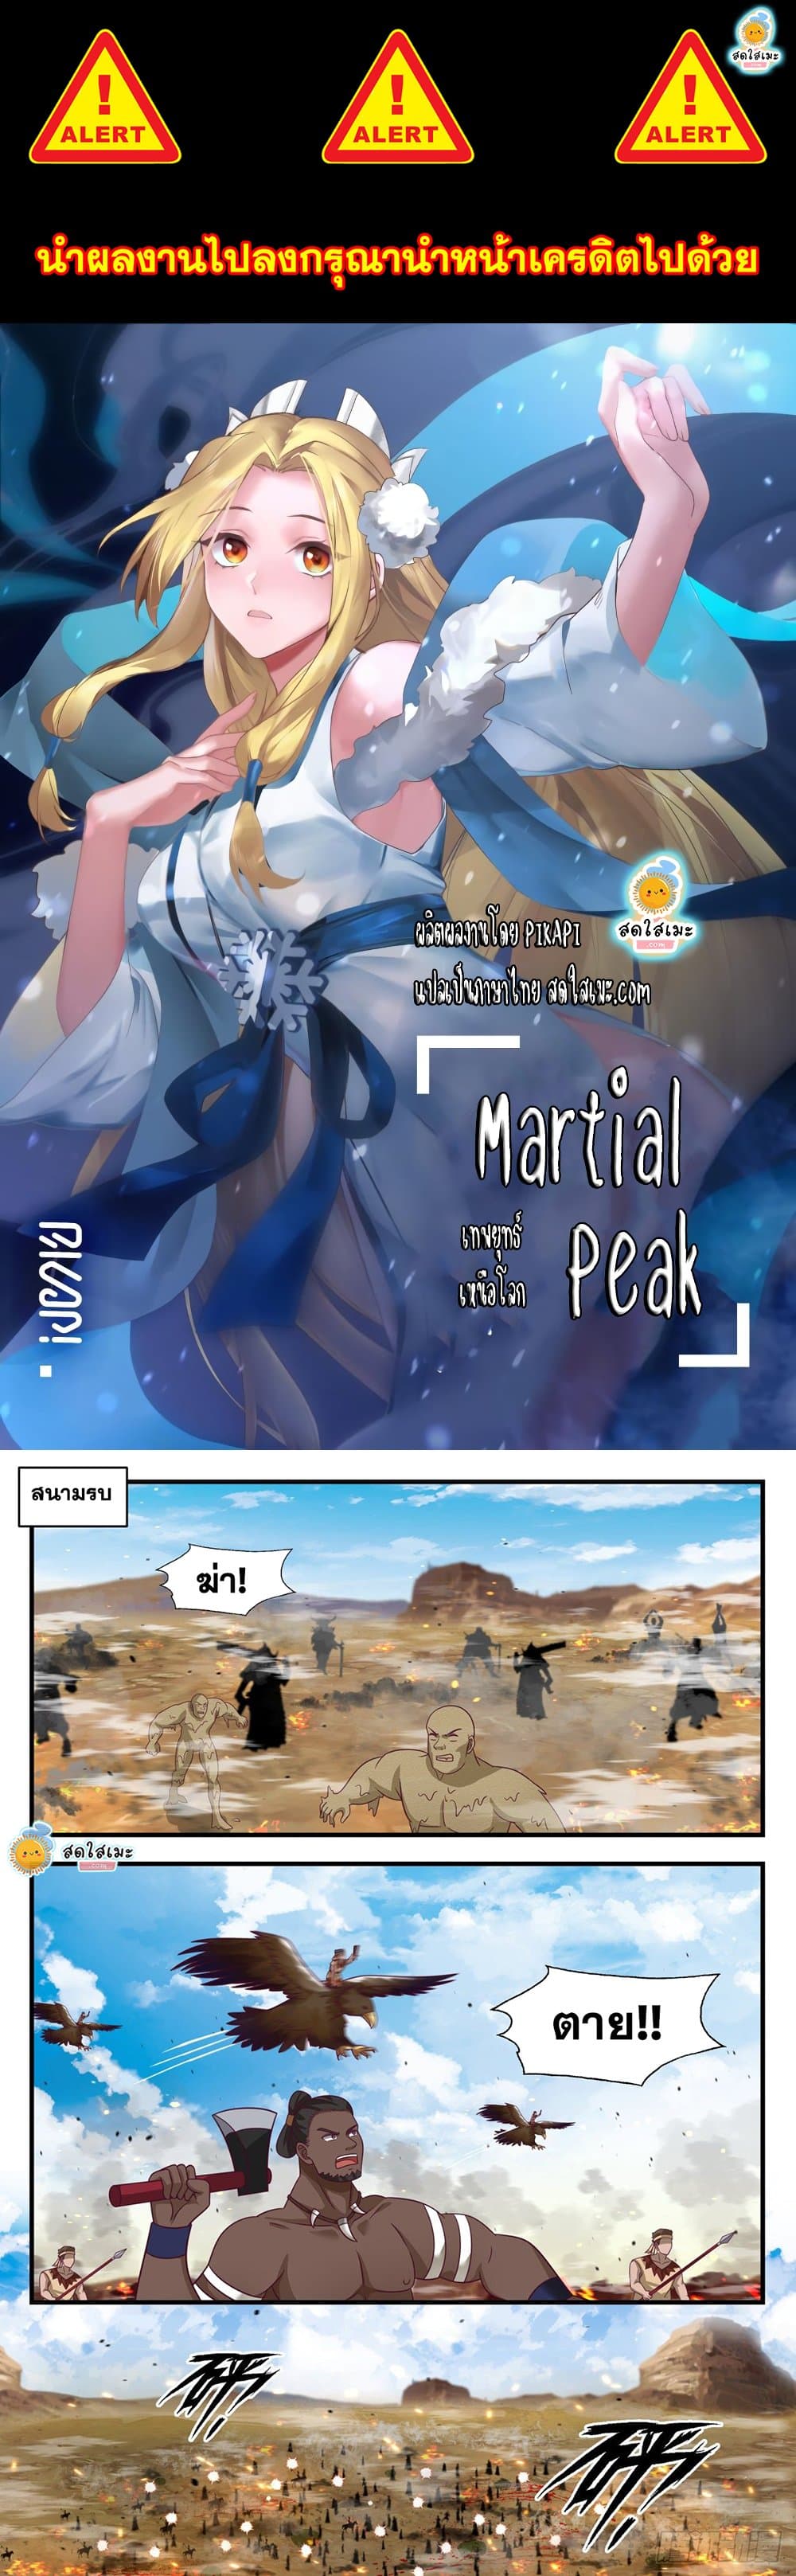 Martial Peak 2028 01